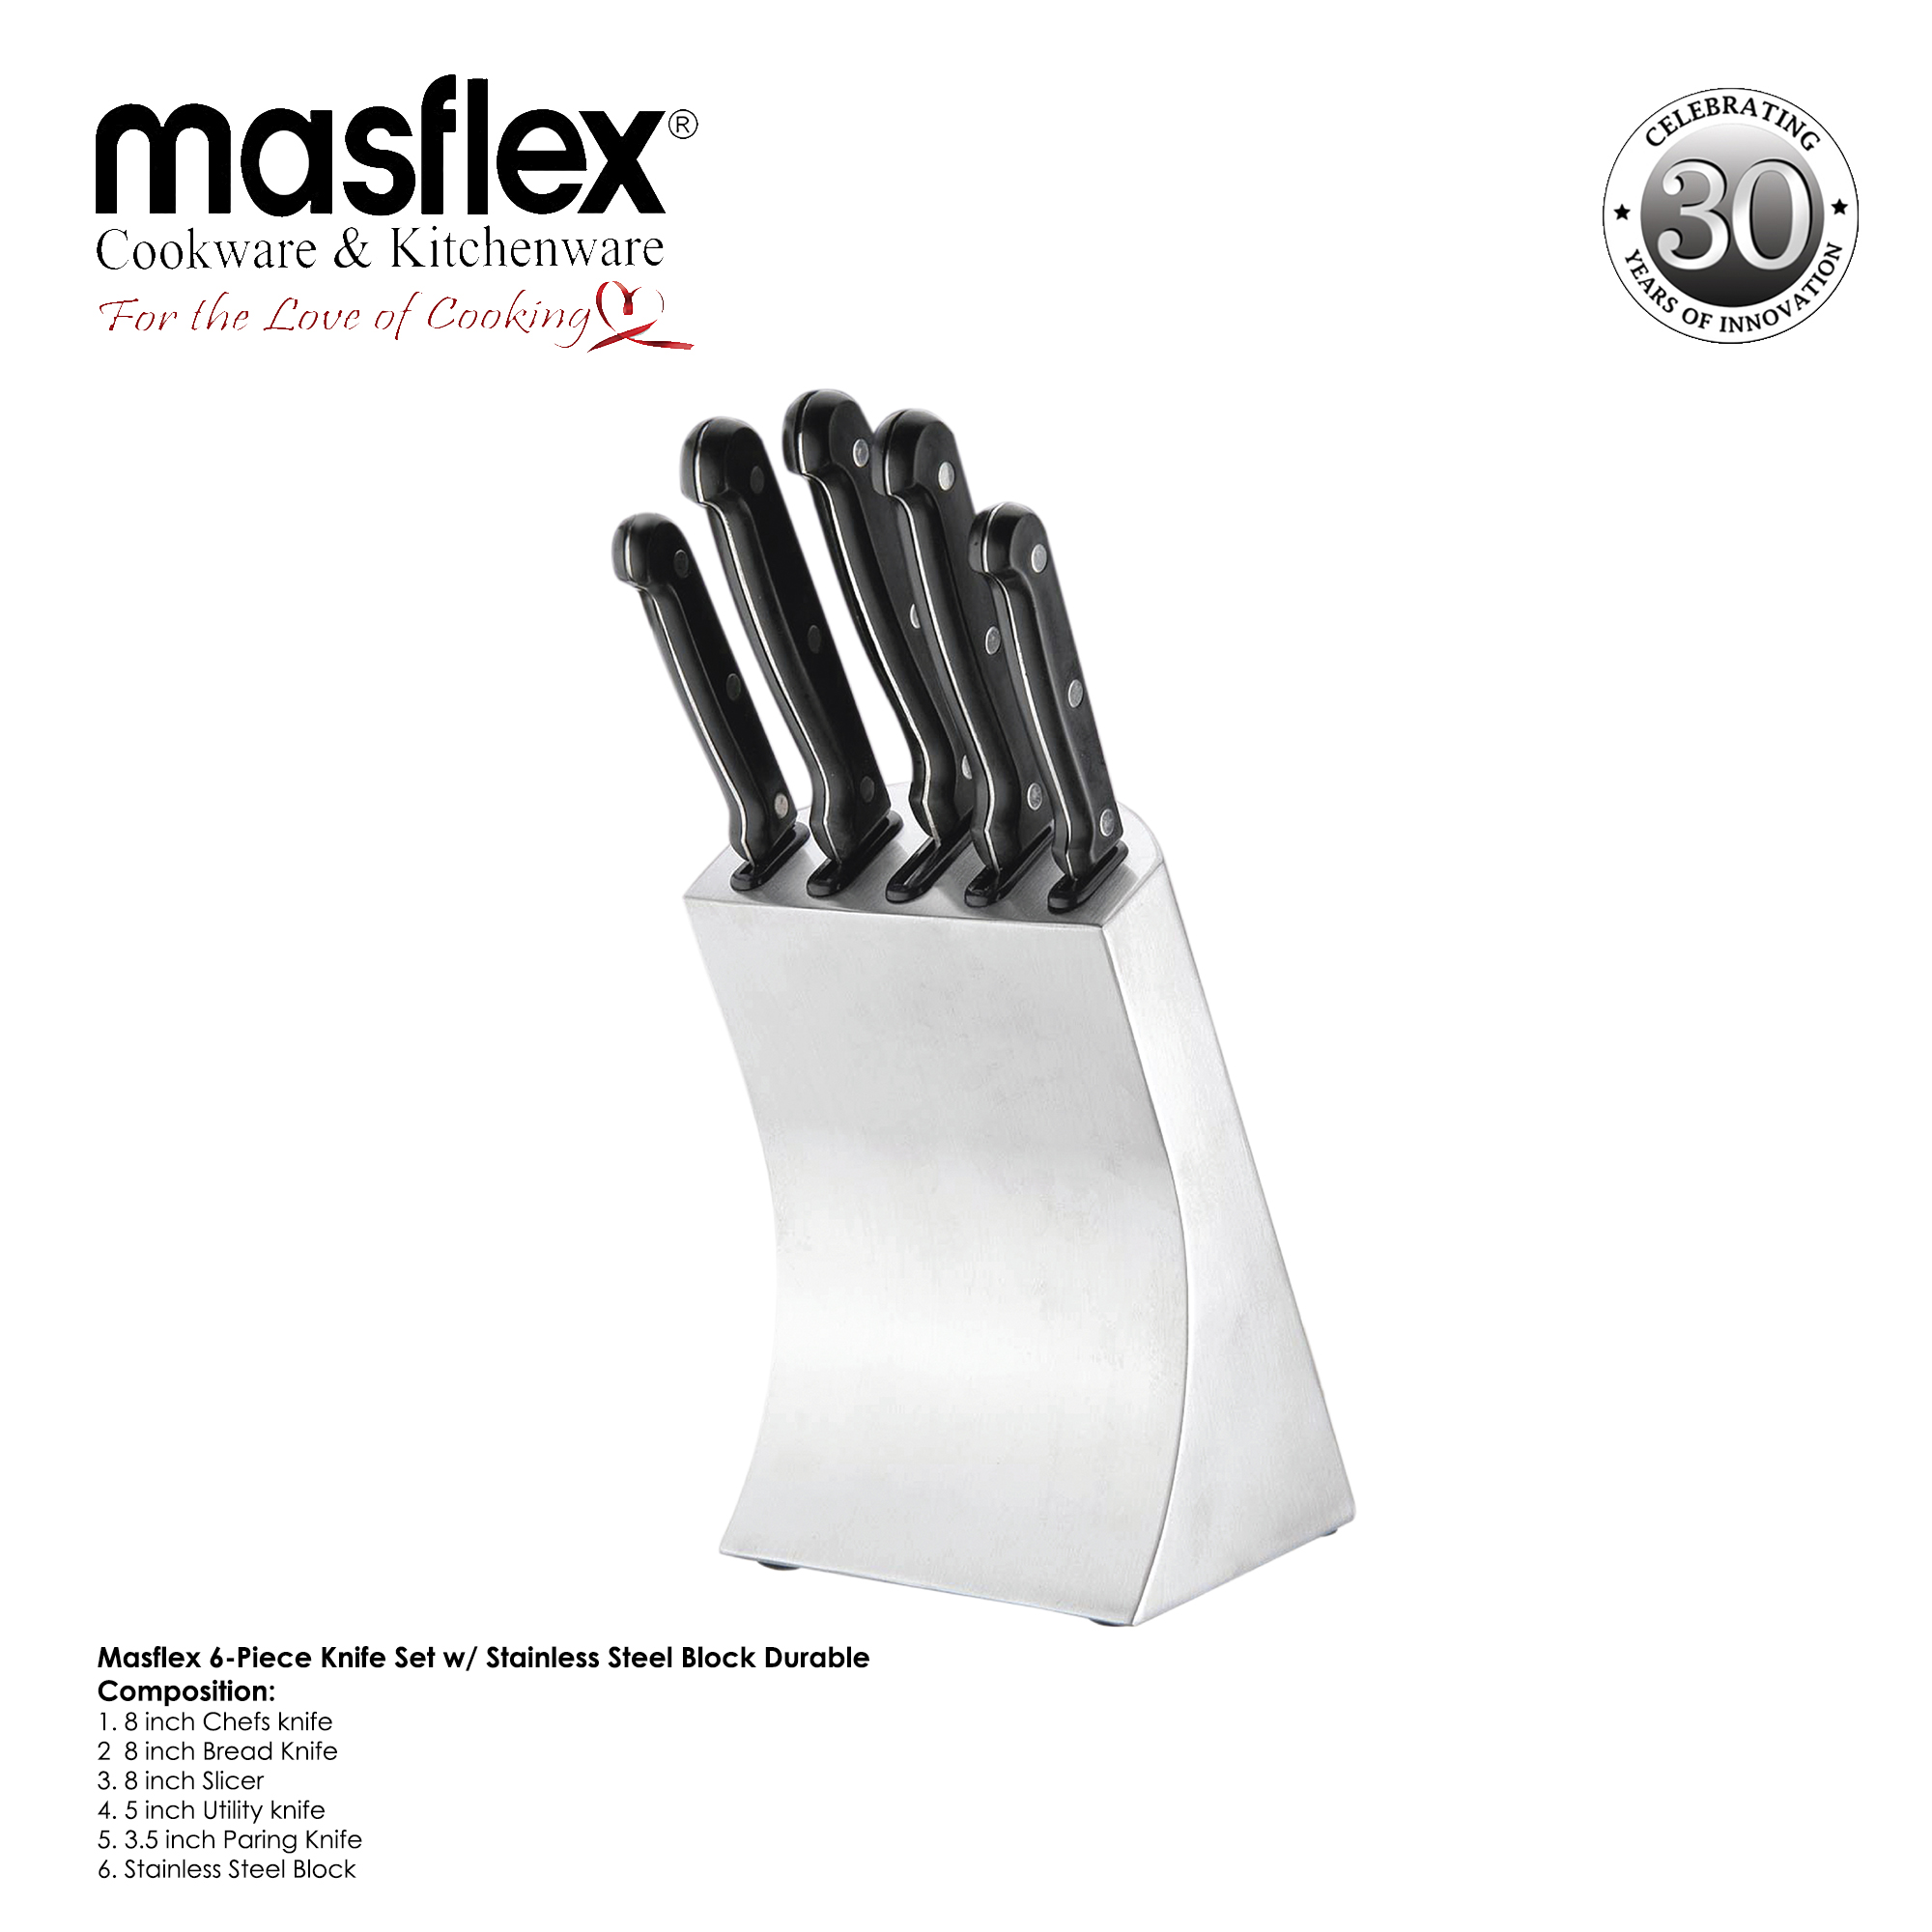 Masflex – 6-Piece Knife Set W/ Stainless Steel Block